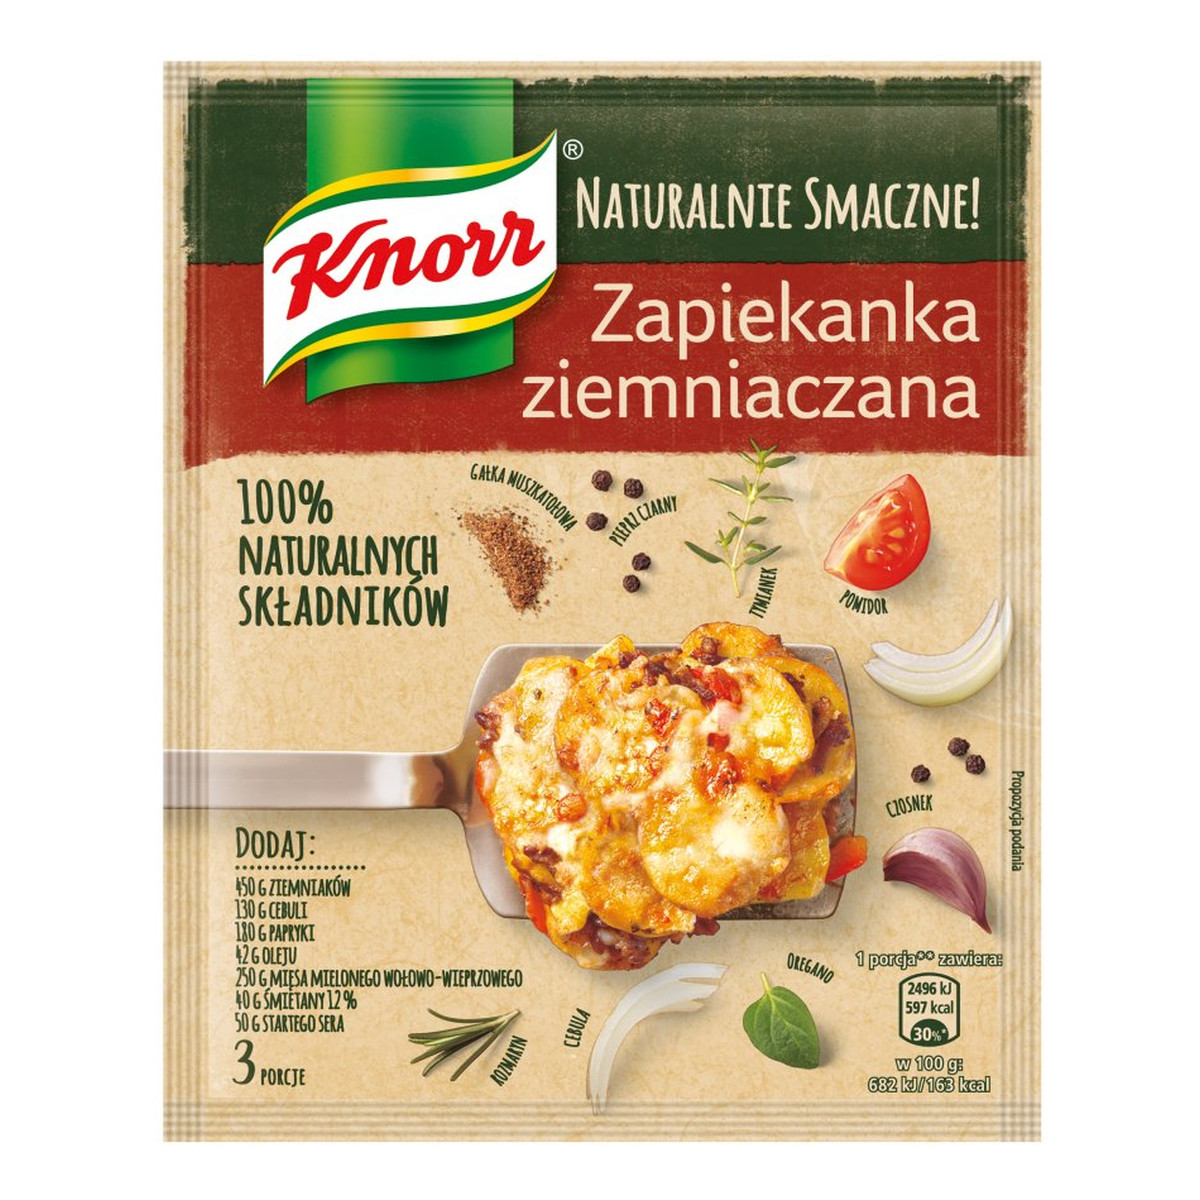 Knorr Naturalnie Smacznie! zapiekanka ziemniaczana 52g